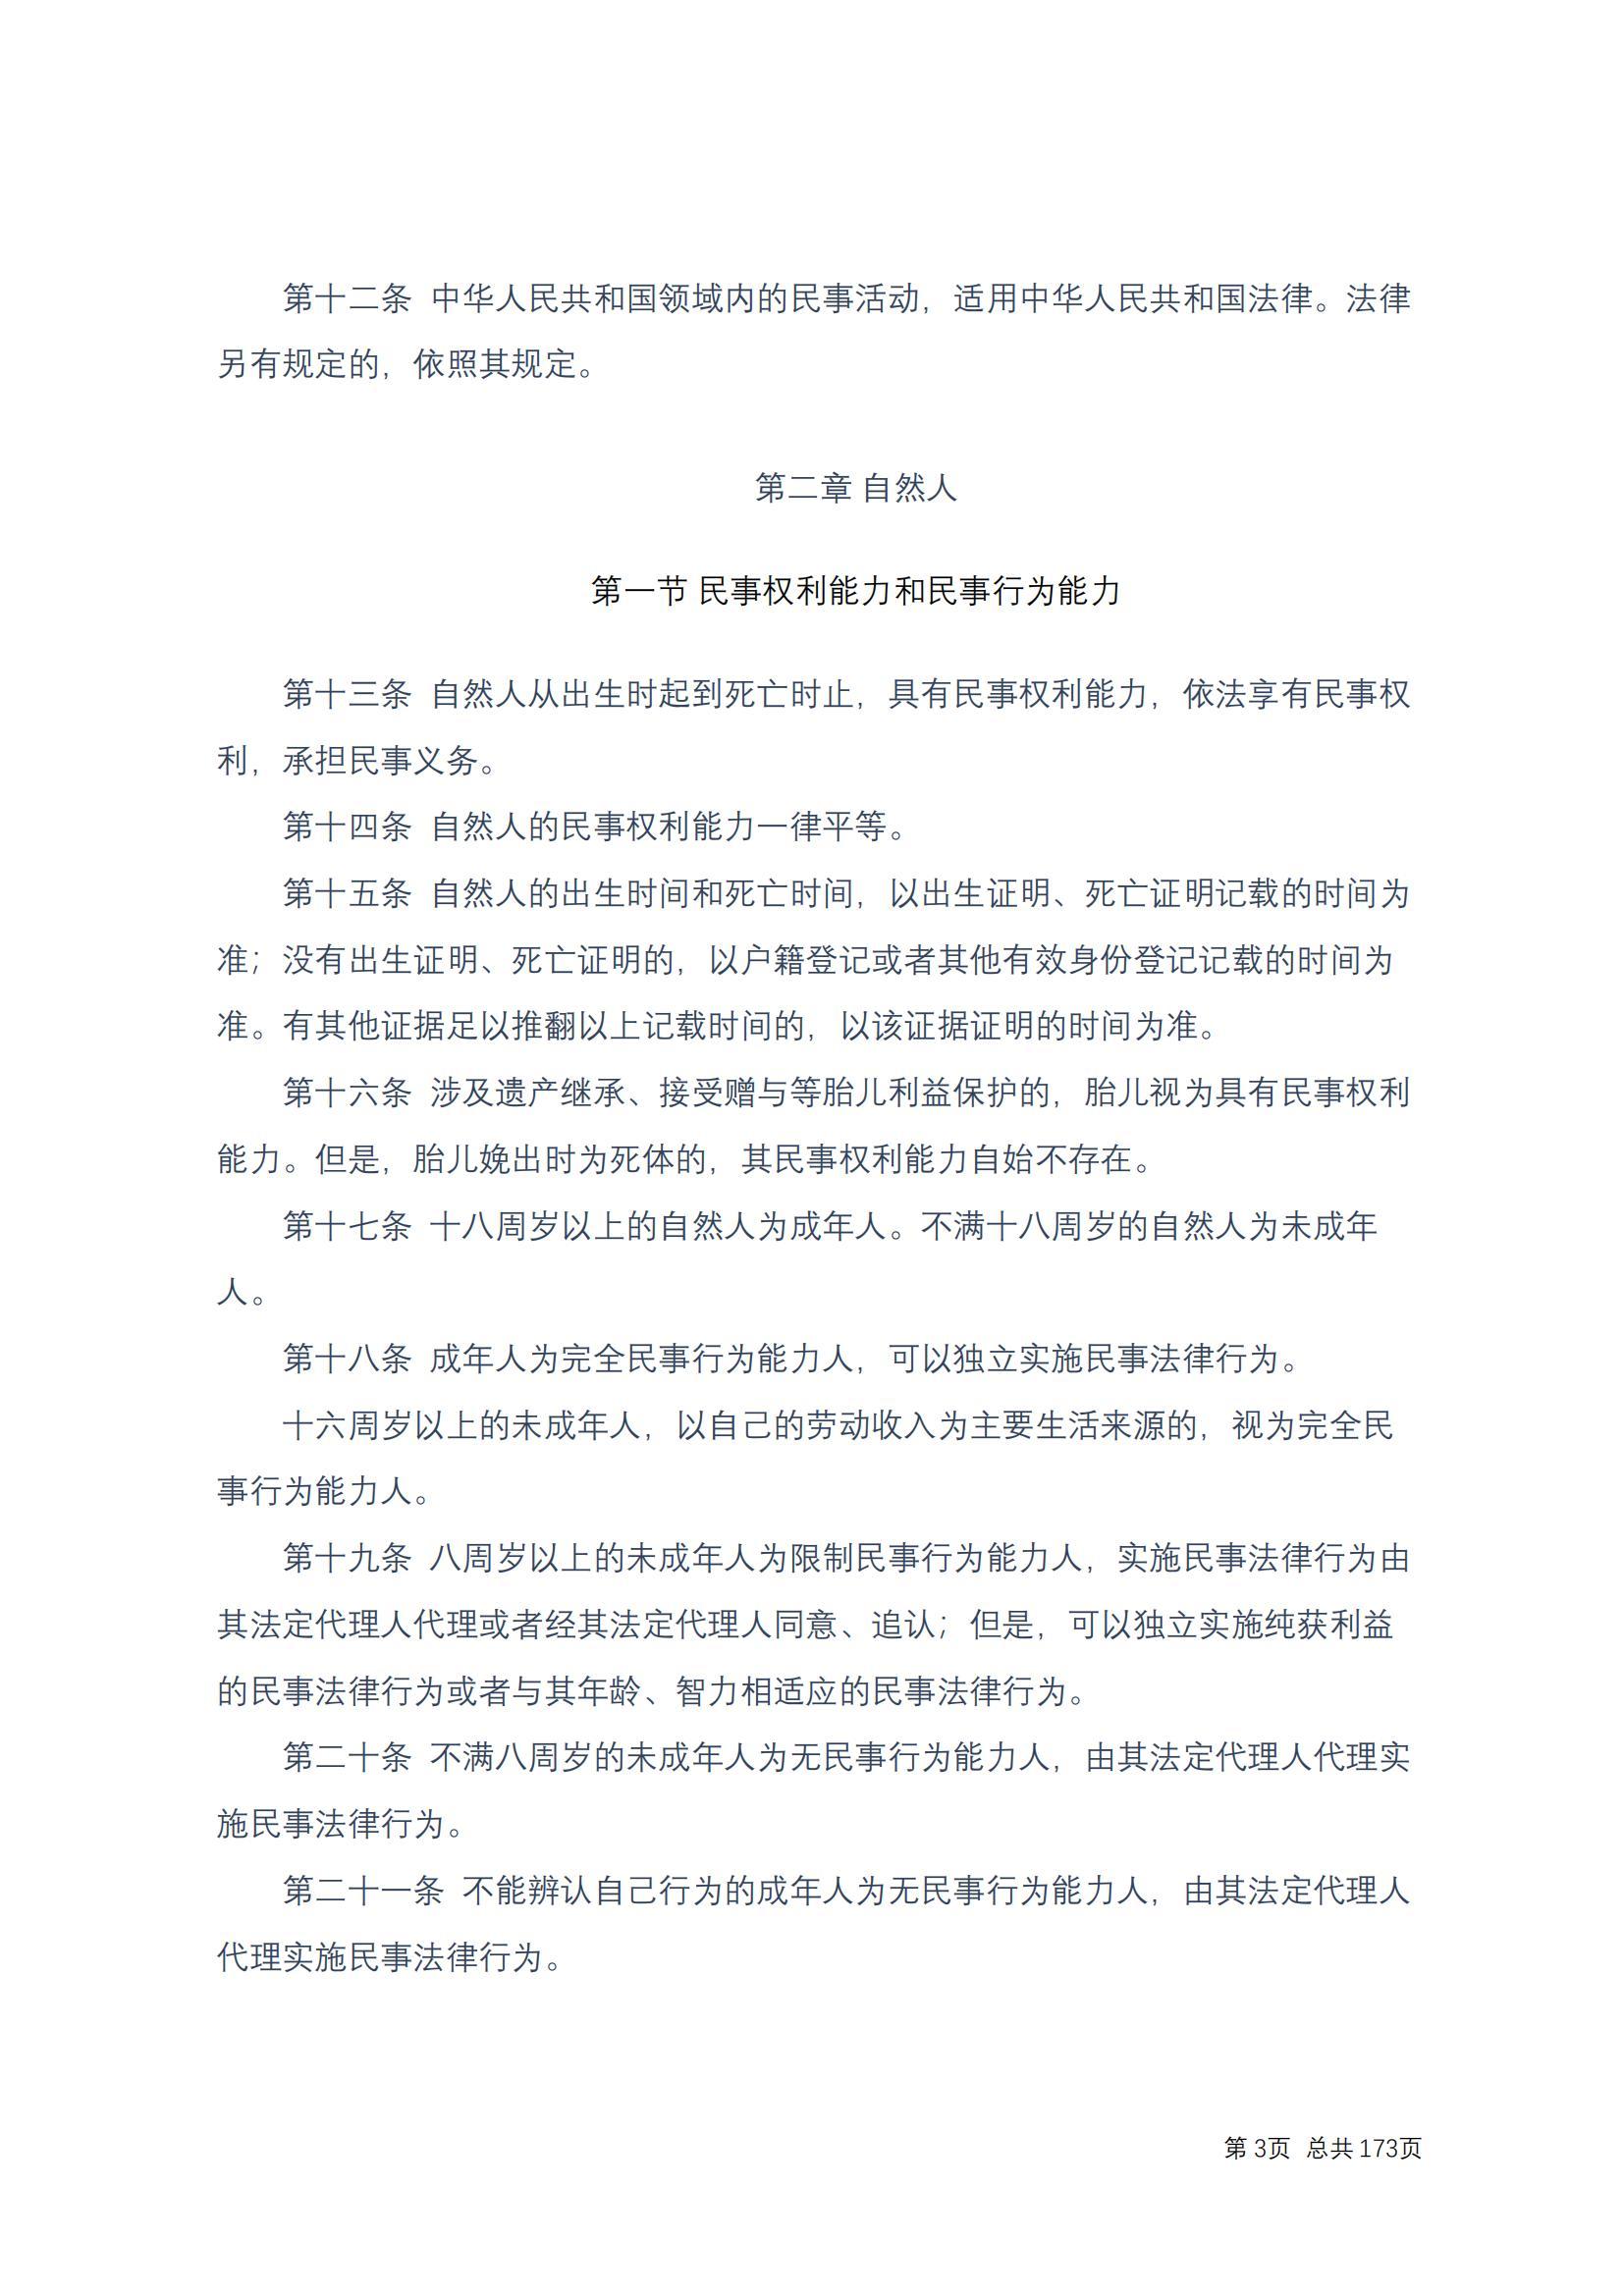 中华人民共和国民法典 修改过_02